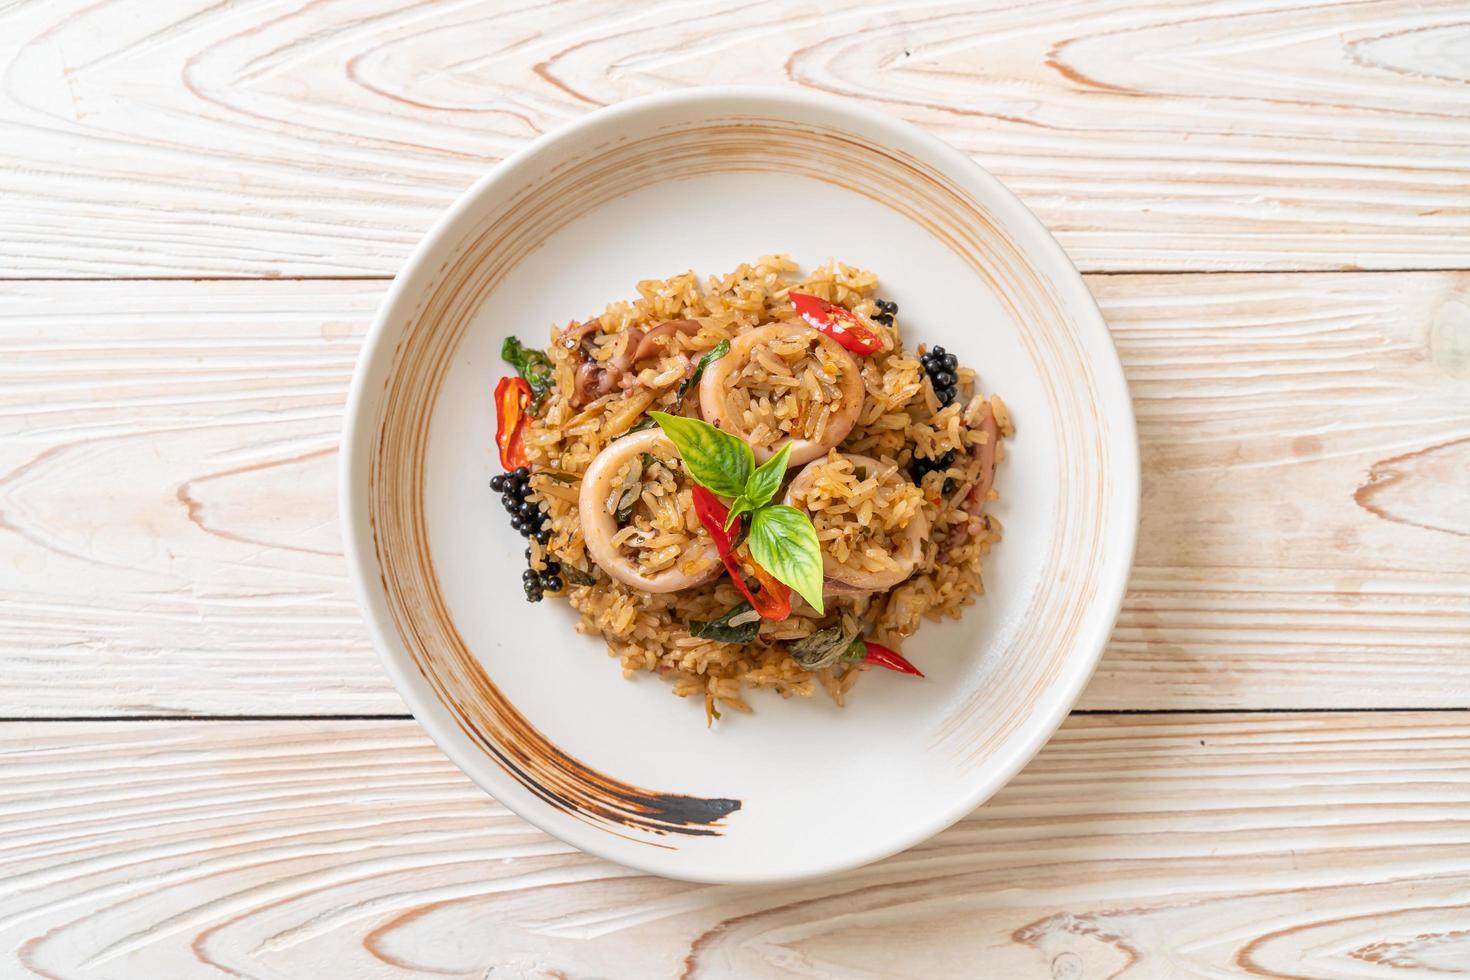 hausgemachter Basilikum und würziger Kräuterreis mit Tintenfisch oder Oktopus - asiatische Küche foto